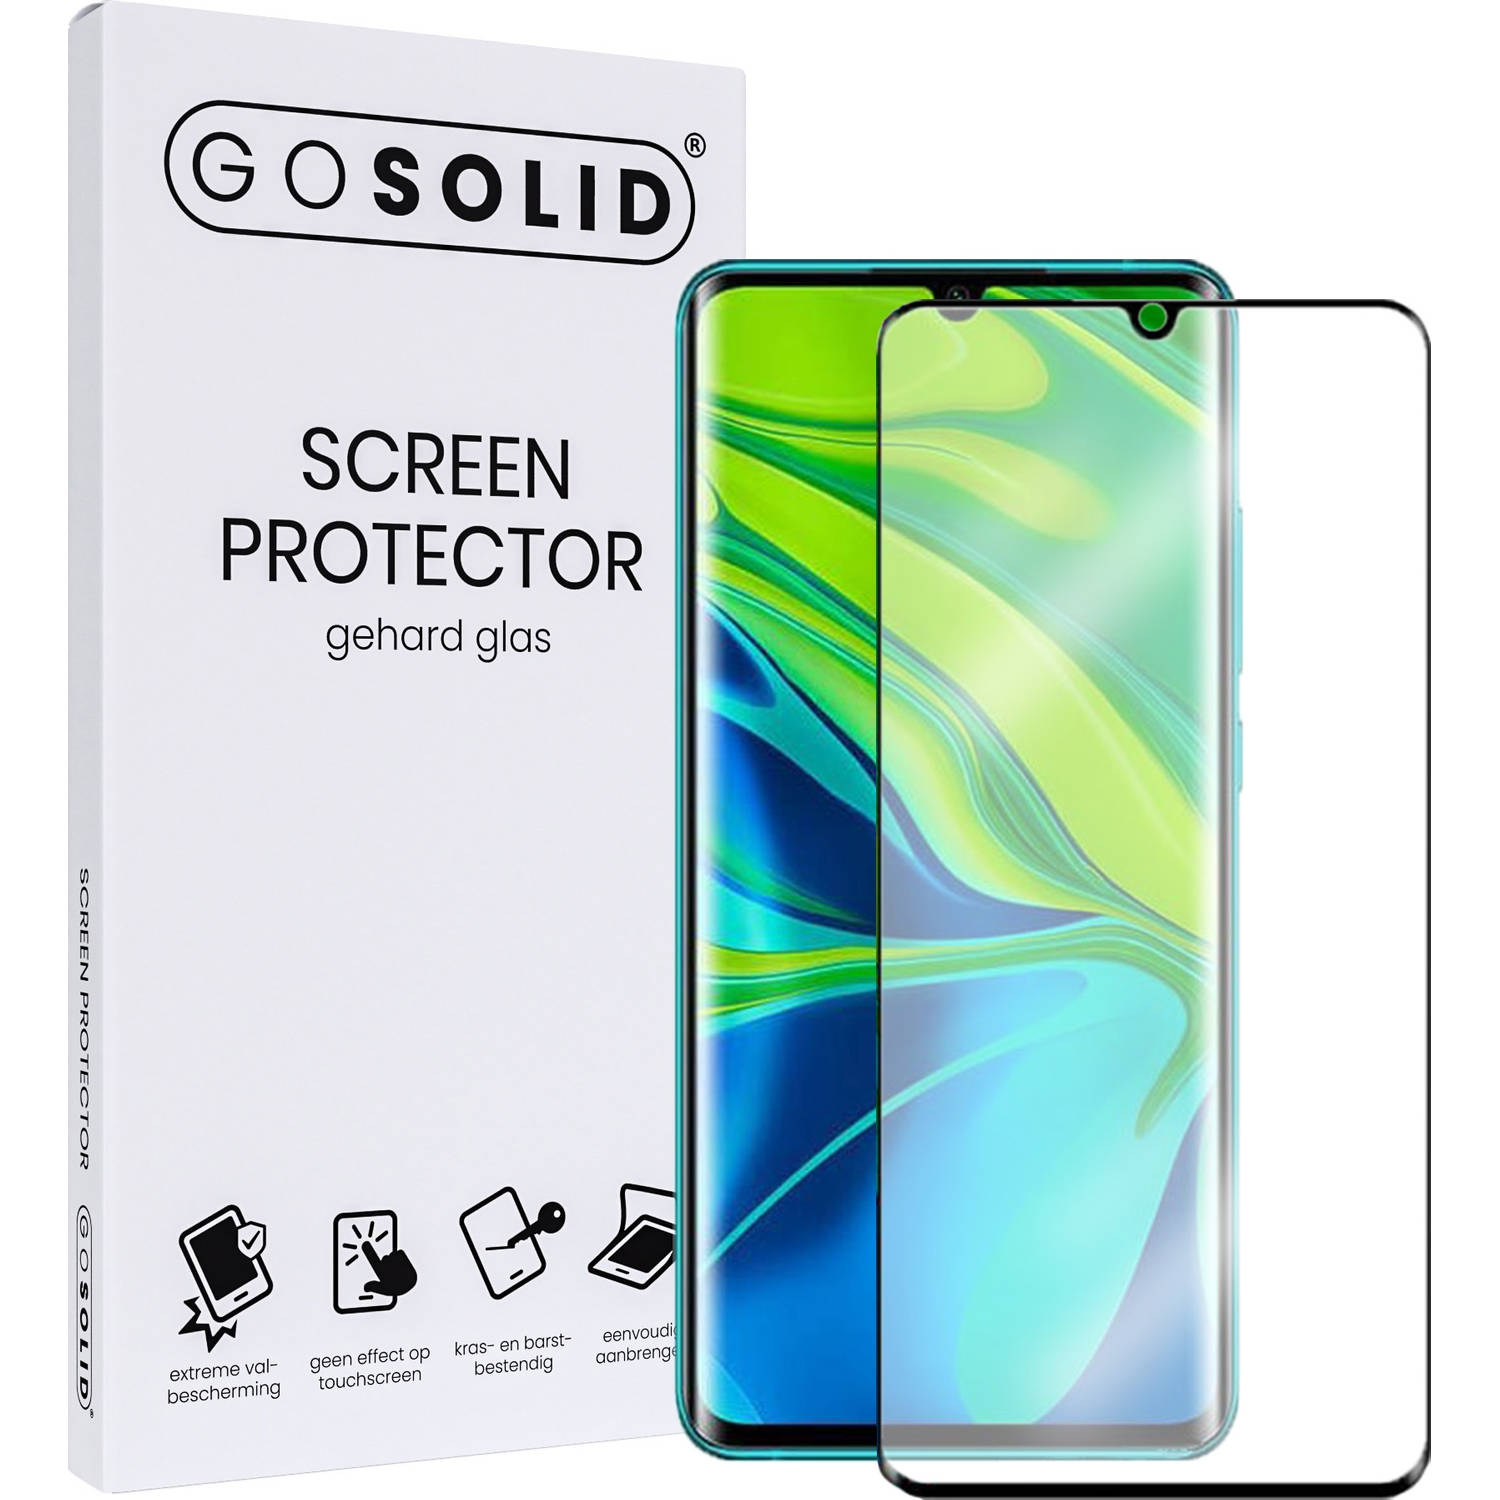 GO SOLID! Screenprotector voor Samsung Galaxy A20